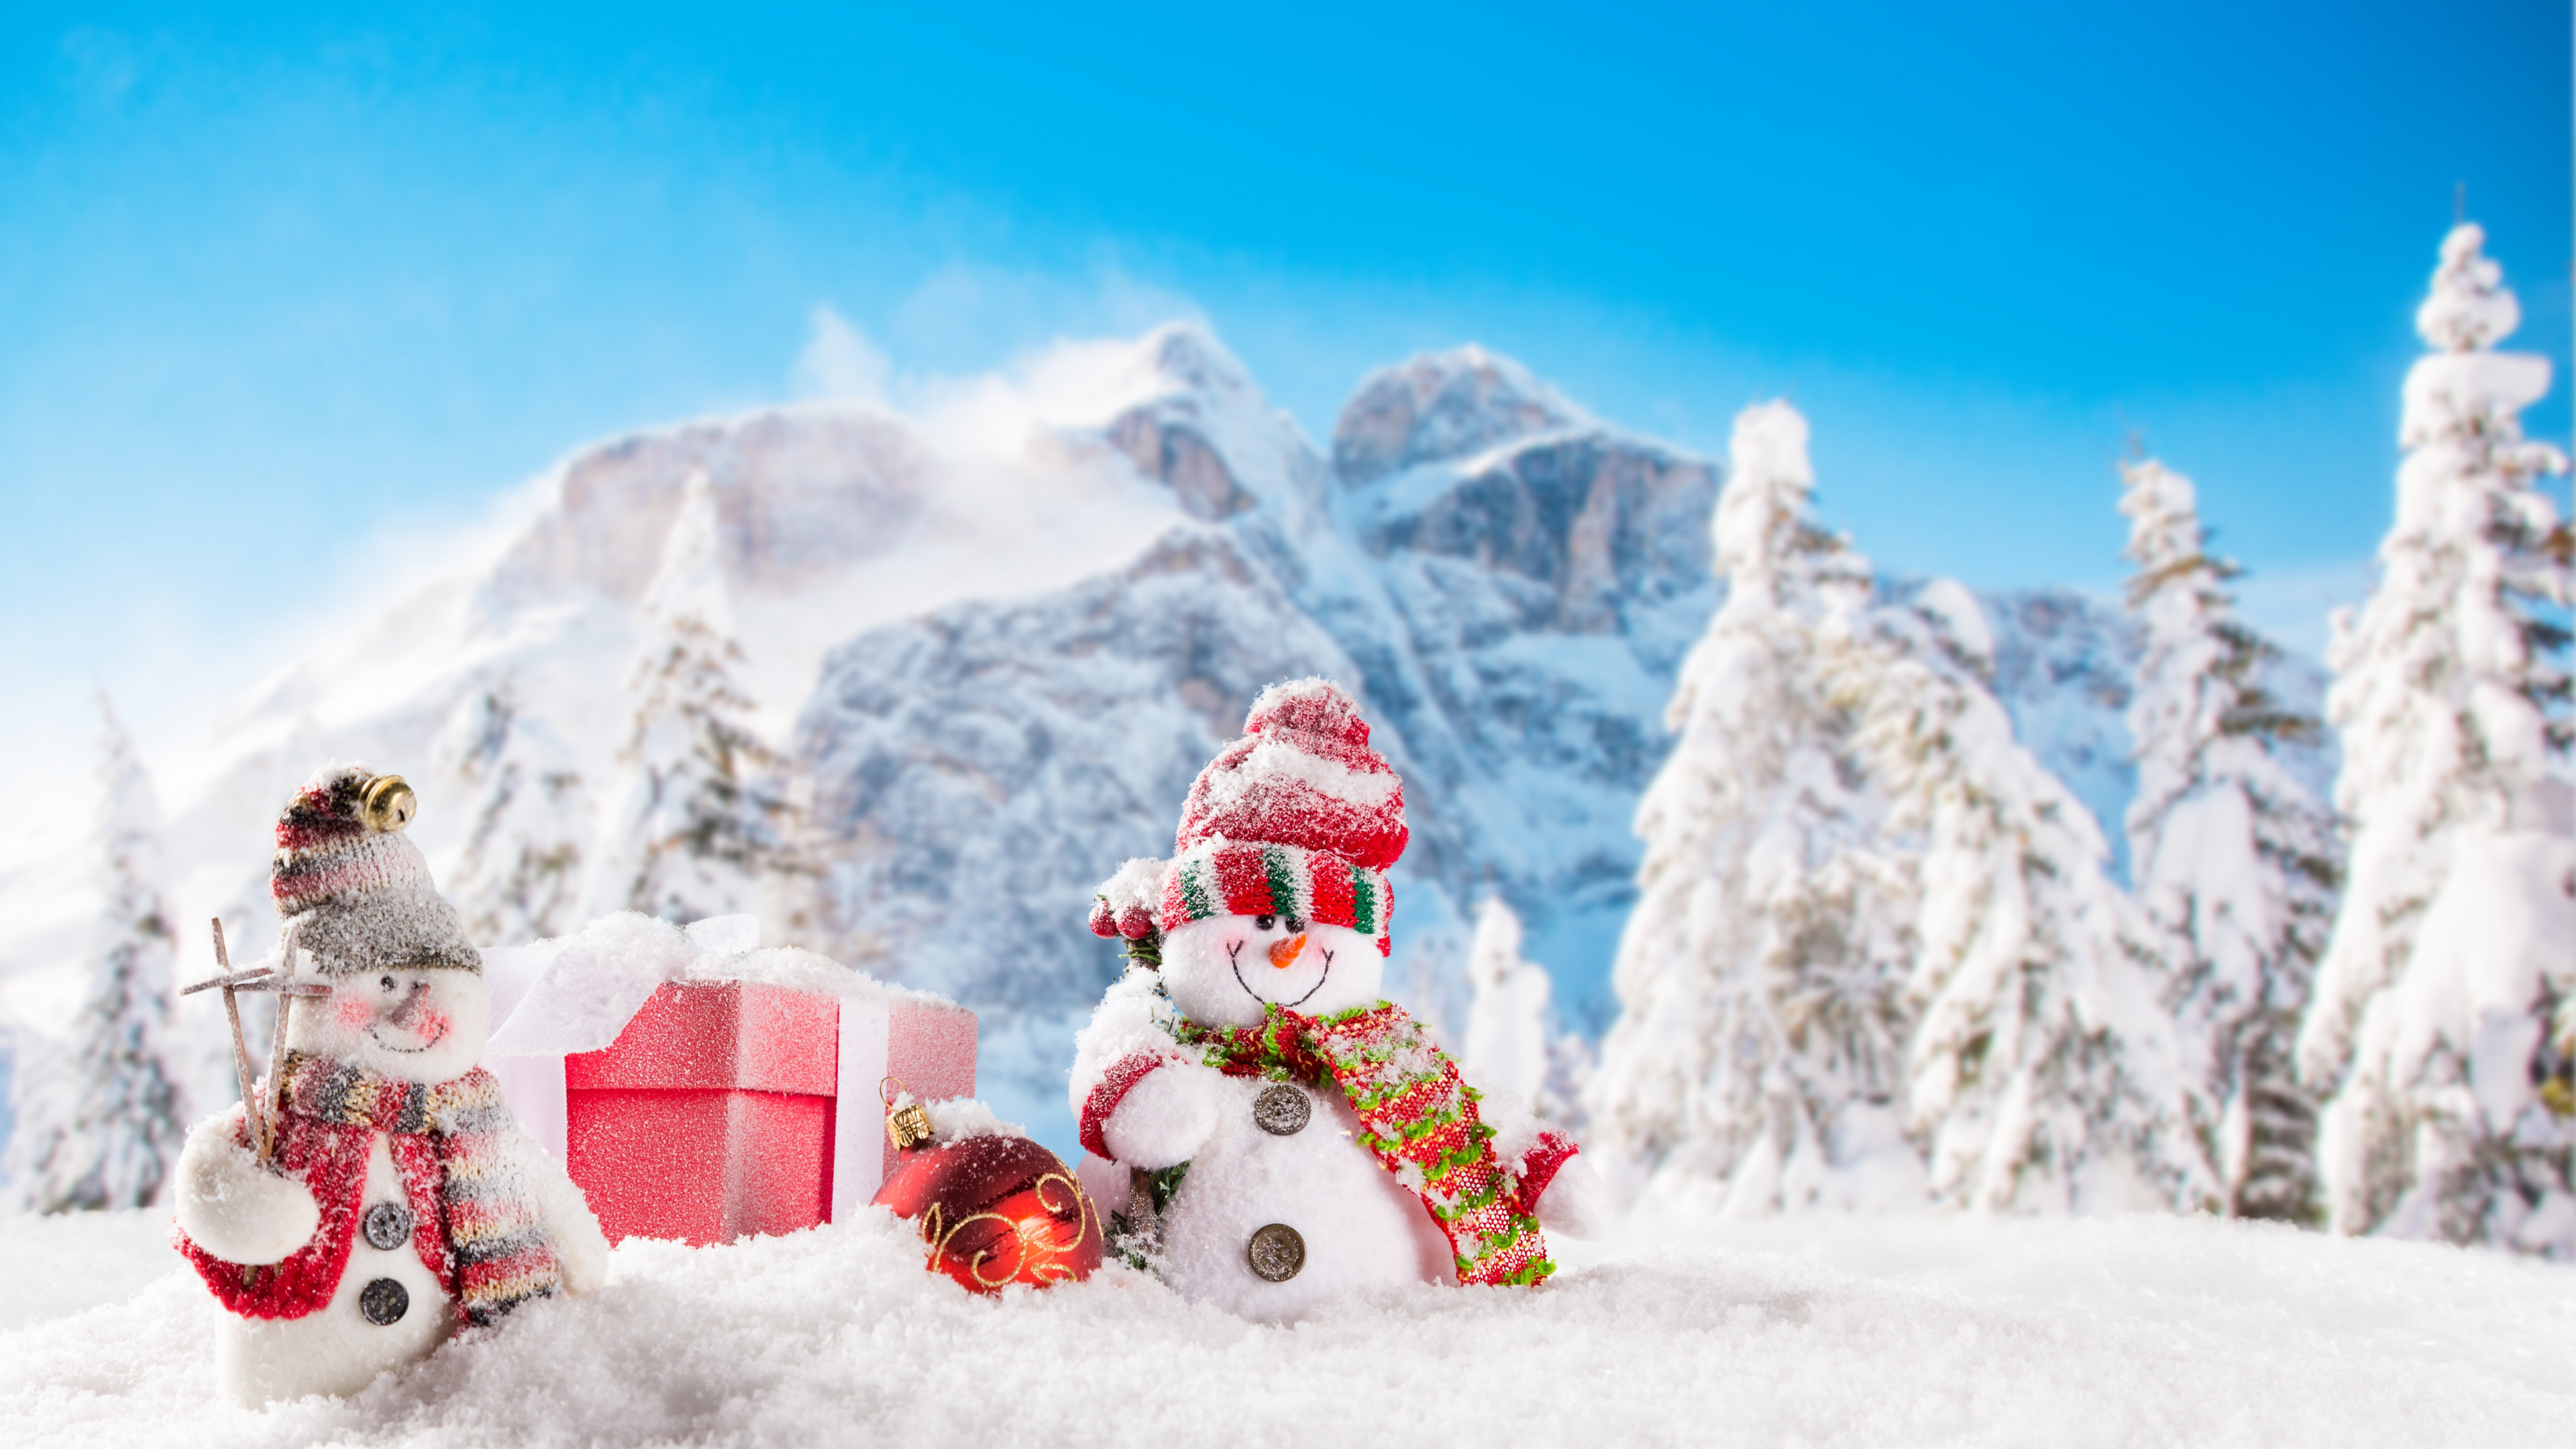 圣诞节那天, 雪人, 冬天, 冻结, 圣诞节 壁纸 3840x2160 允许